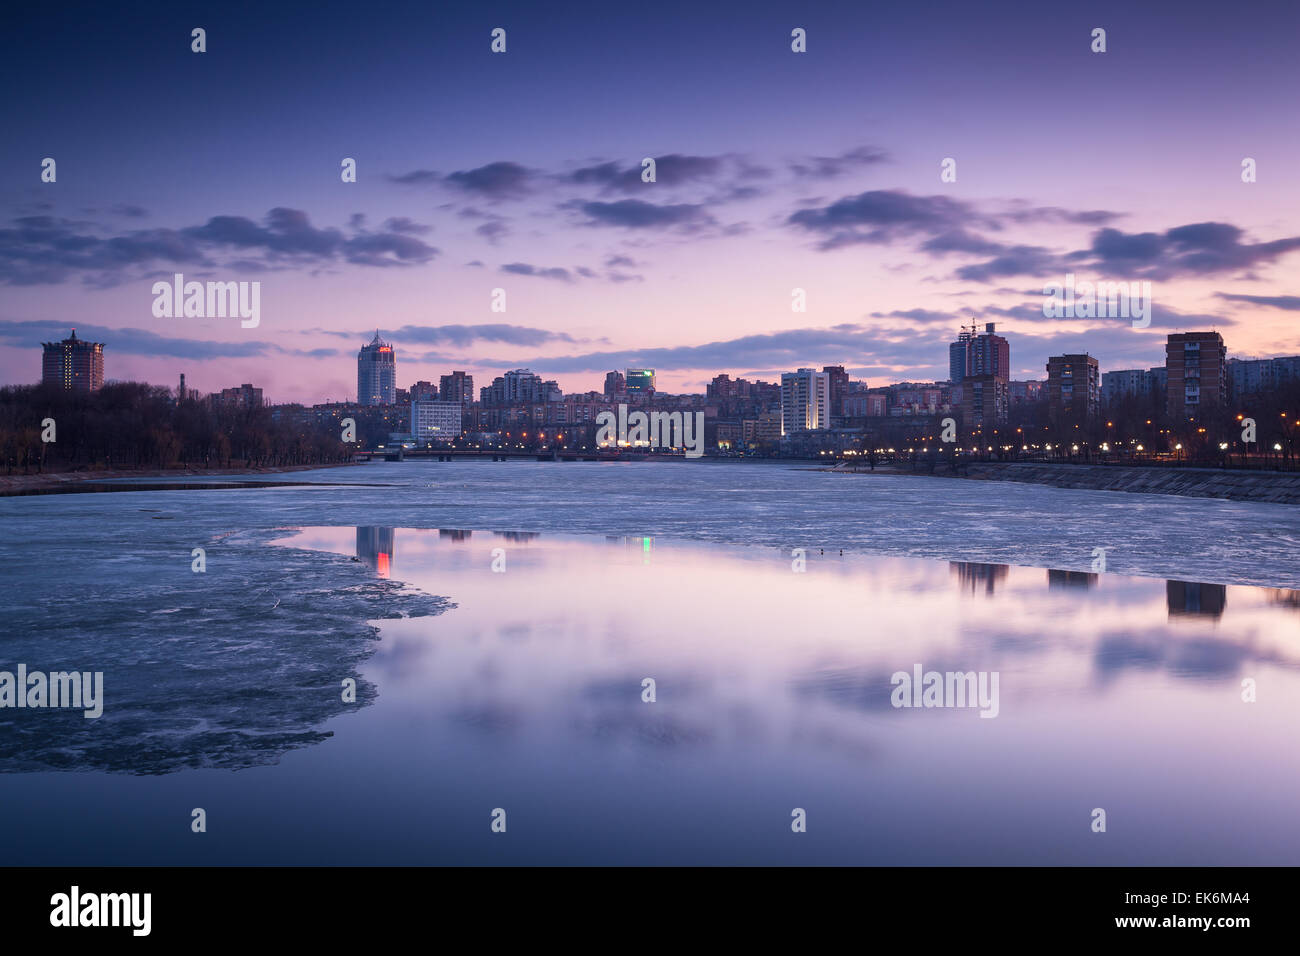 La réflexion de la ville de nuit sur la rivière à Donetsk. L'Ukraine Banque D'Images